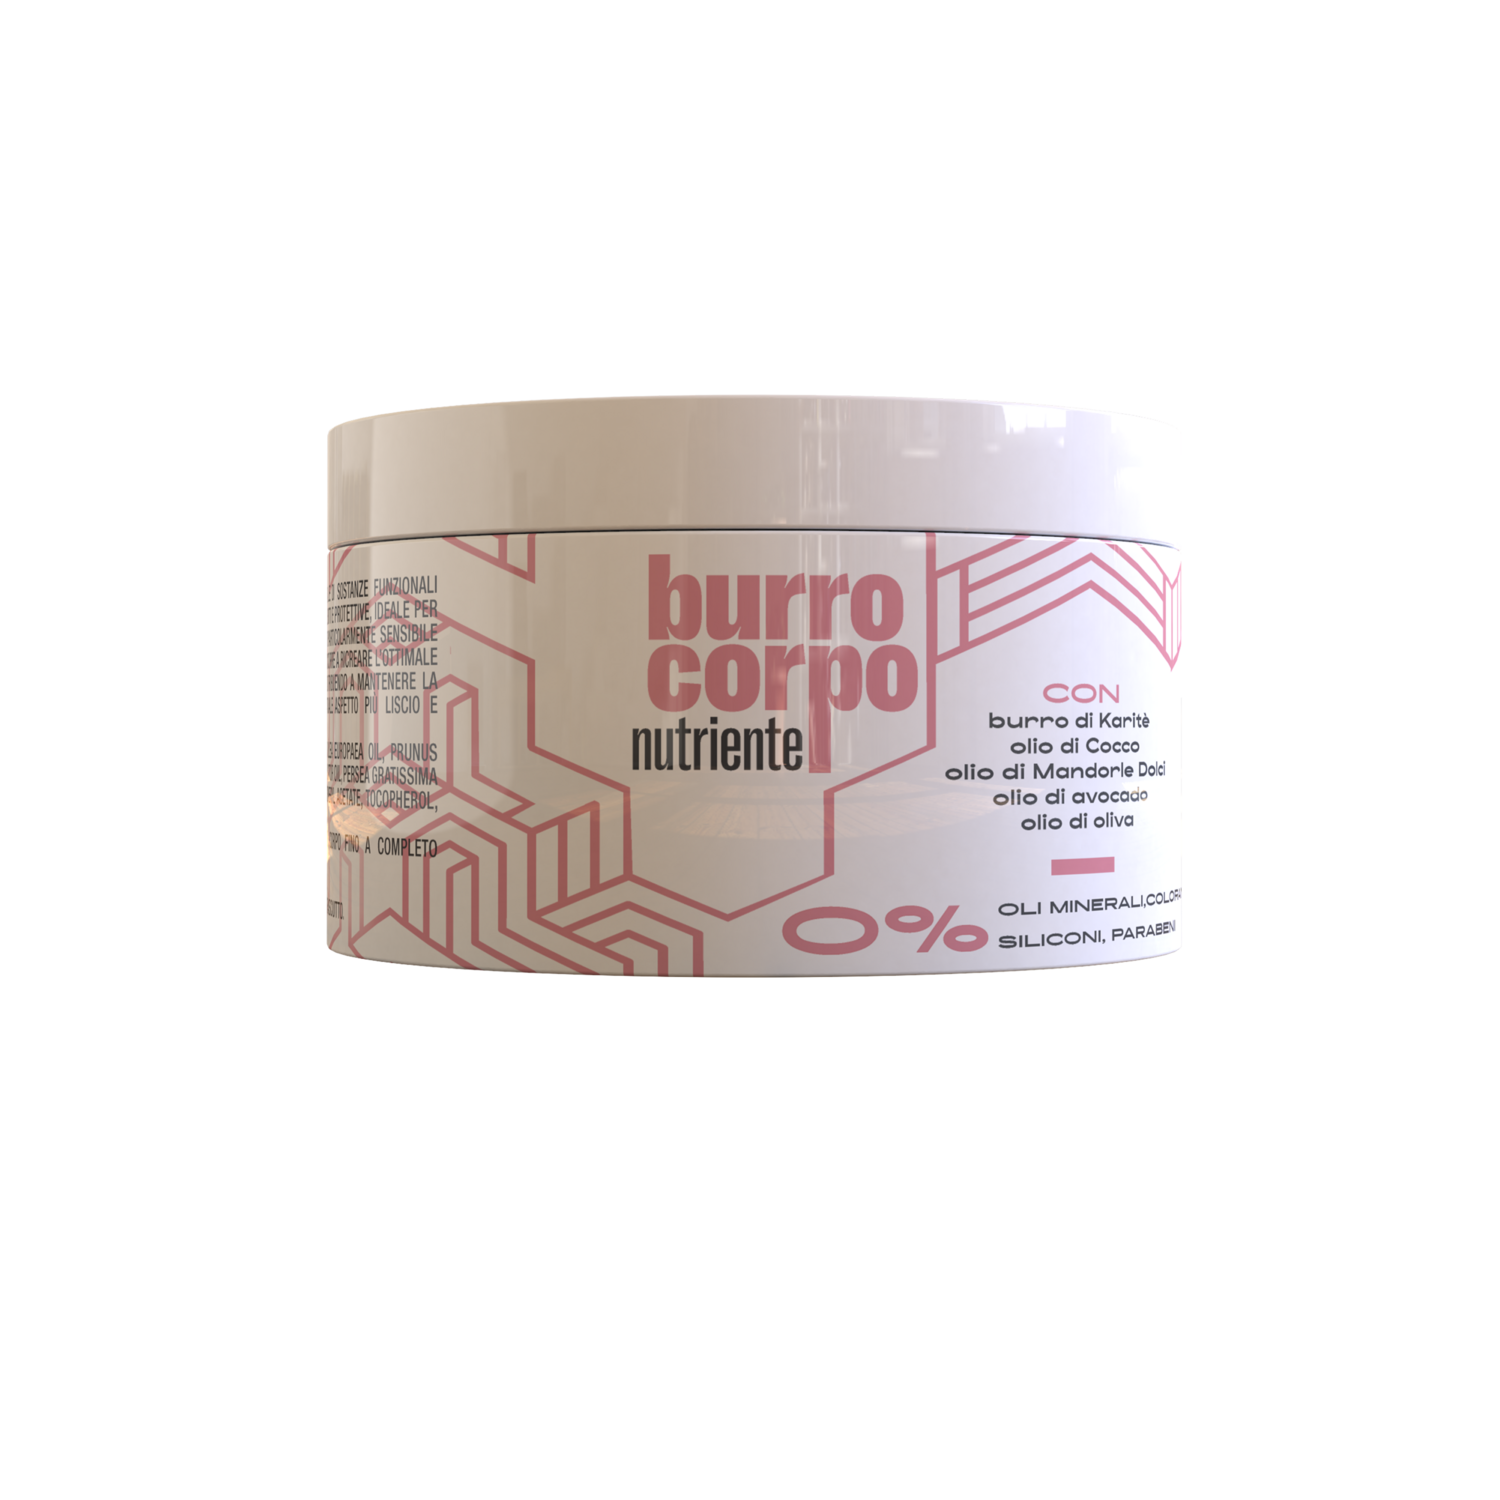 Burro corpo nutriente 200ml-Body butter